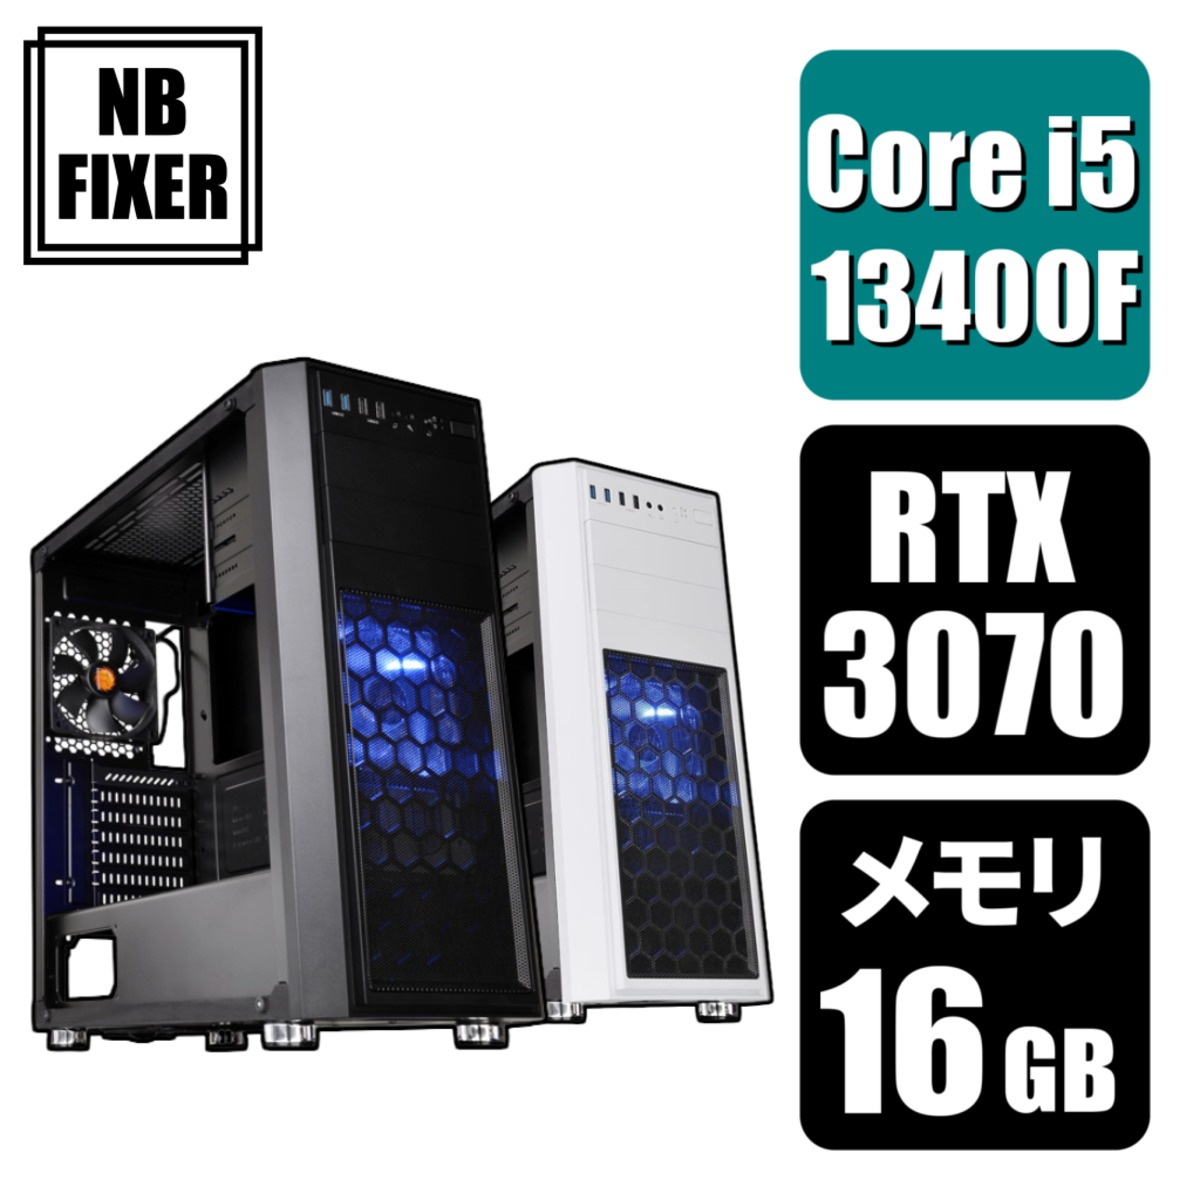 【ゲーミングPC】 Core i5 13400F / RTX3070 / メモリ16GB / SSD 1TB | NB FIXER ゲーミングPC通販  公式オンラインショップ powered by BASE